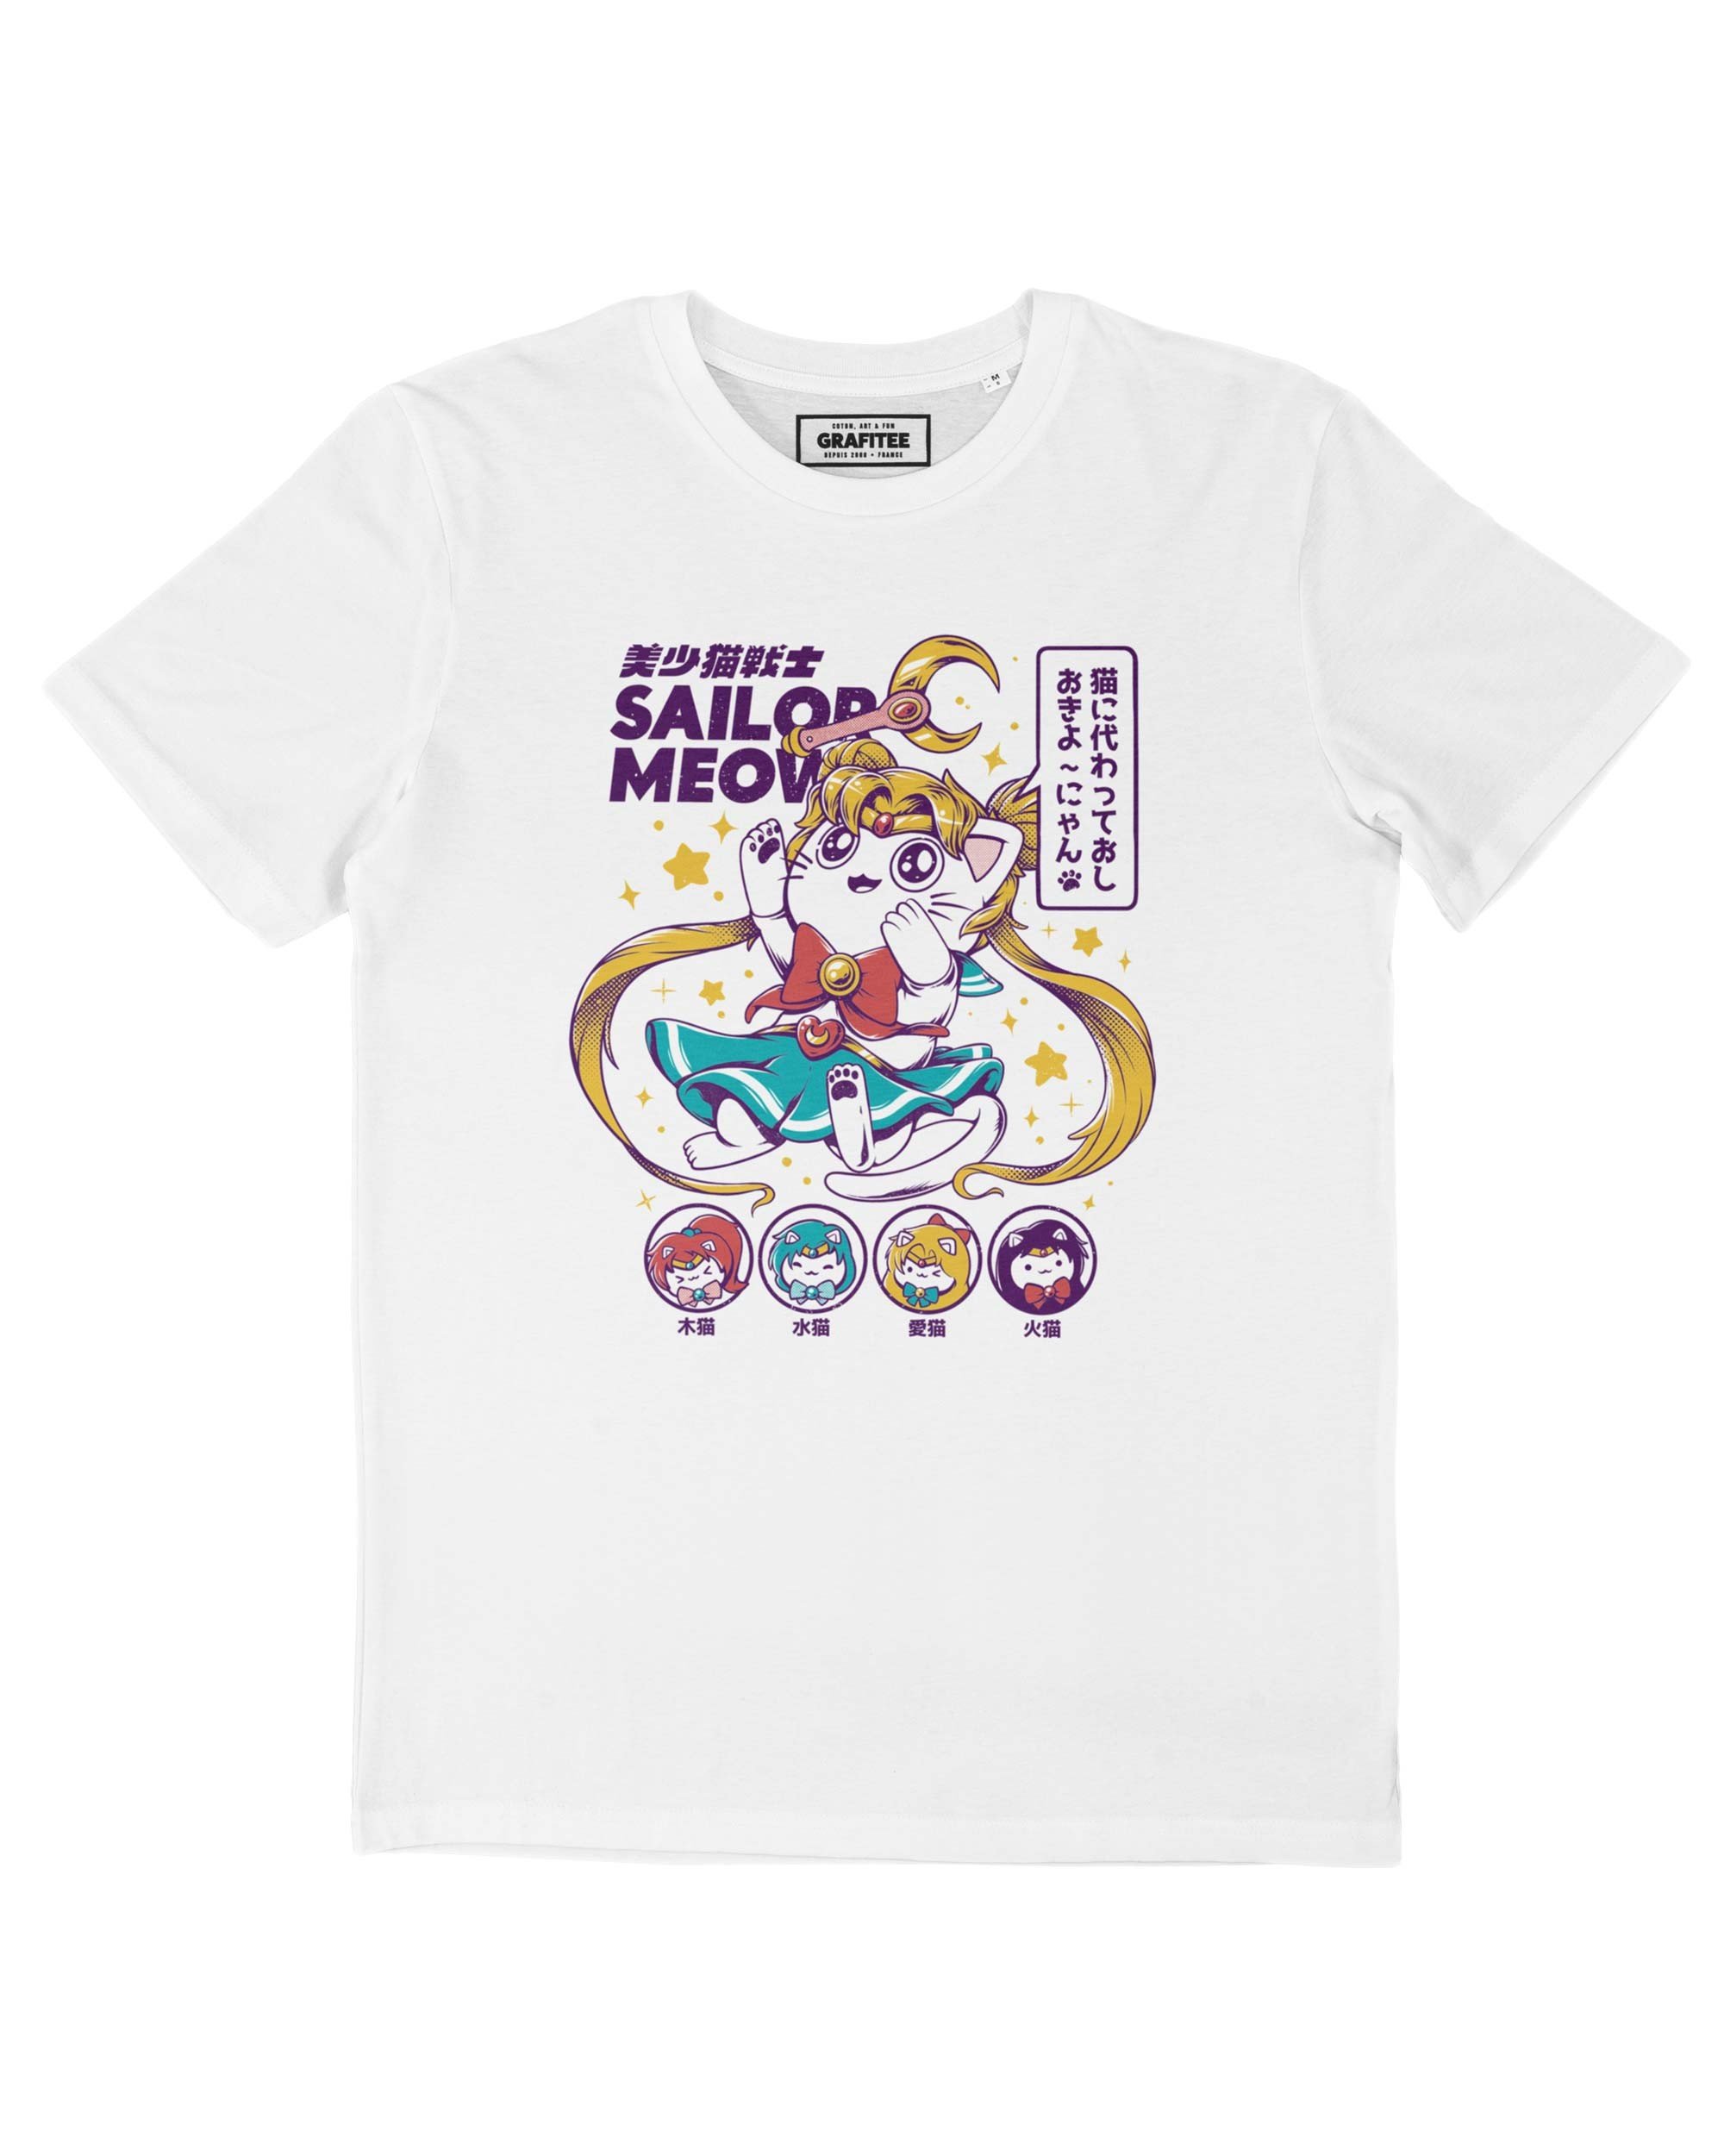 T-shirt Sailor Meow Grafitee